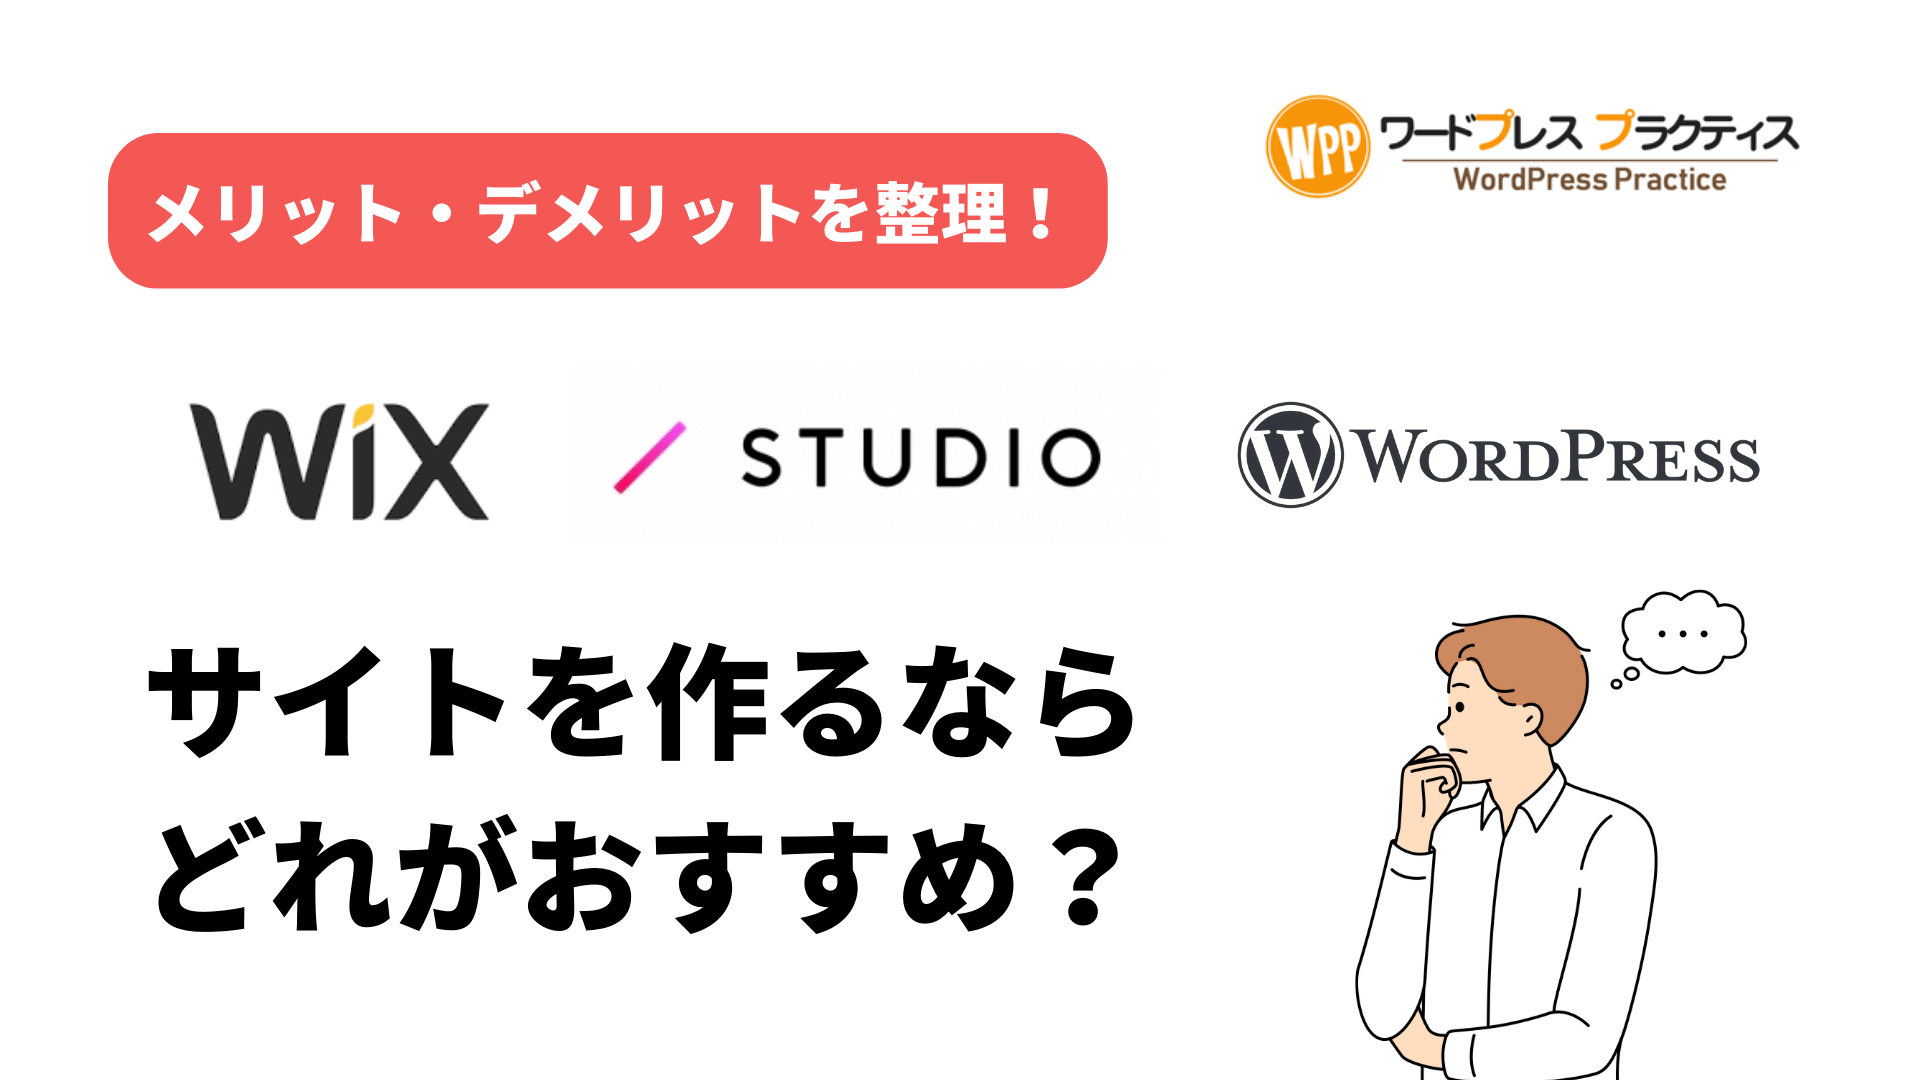 Wix・STUDIO・ワードプレス、サイトを作るならどれがおすすめ？